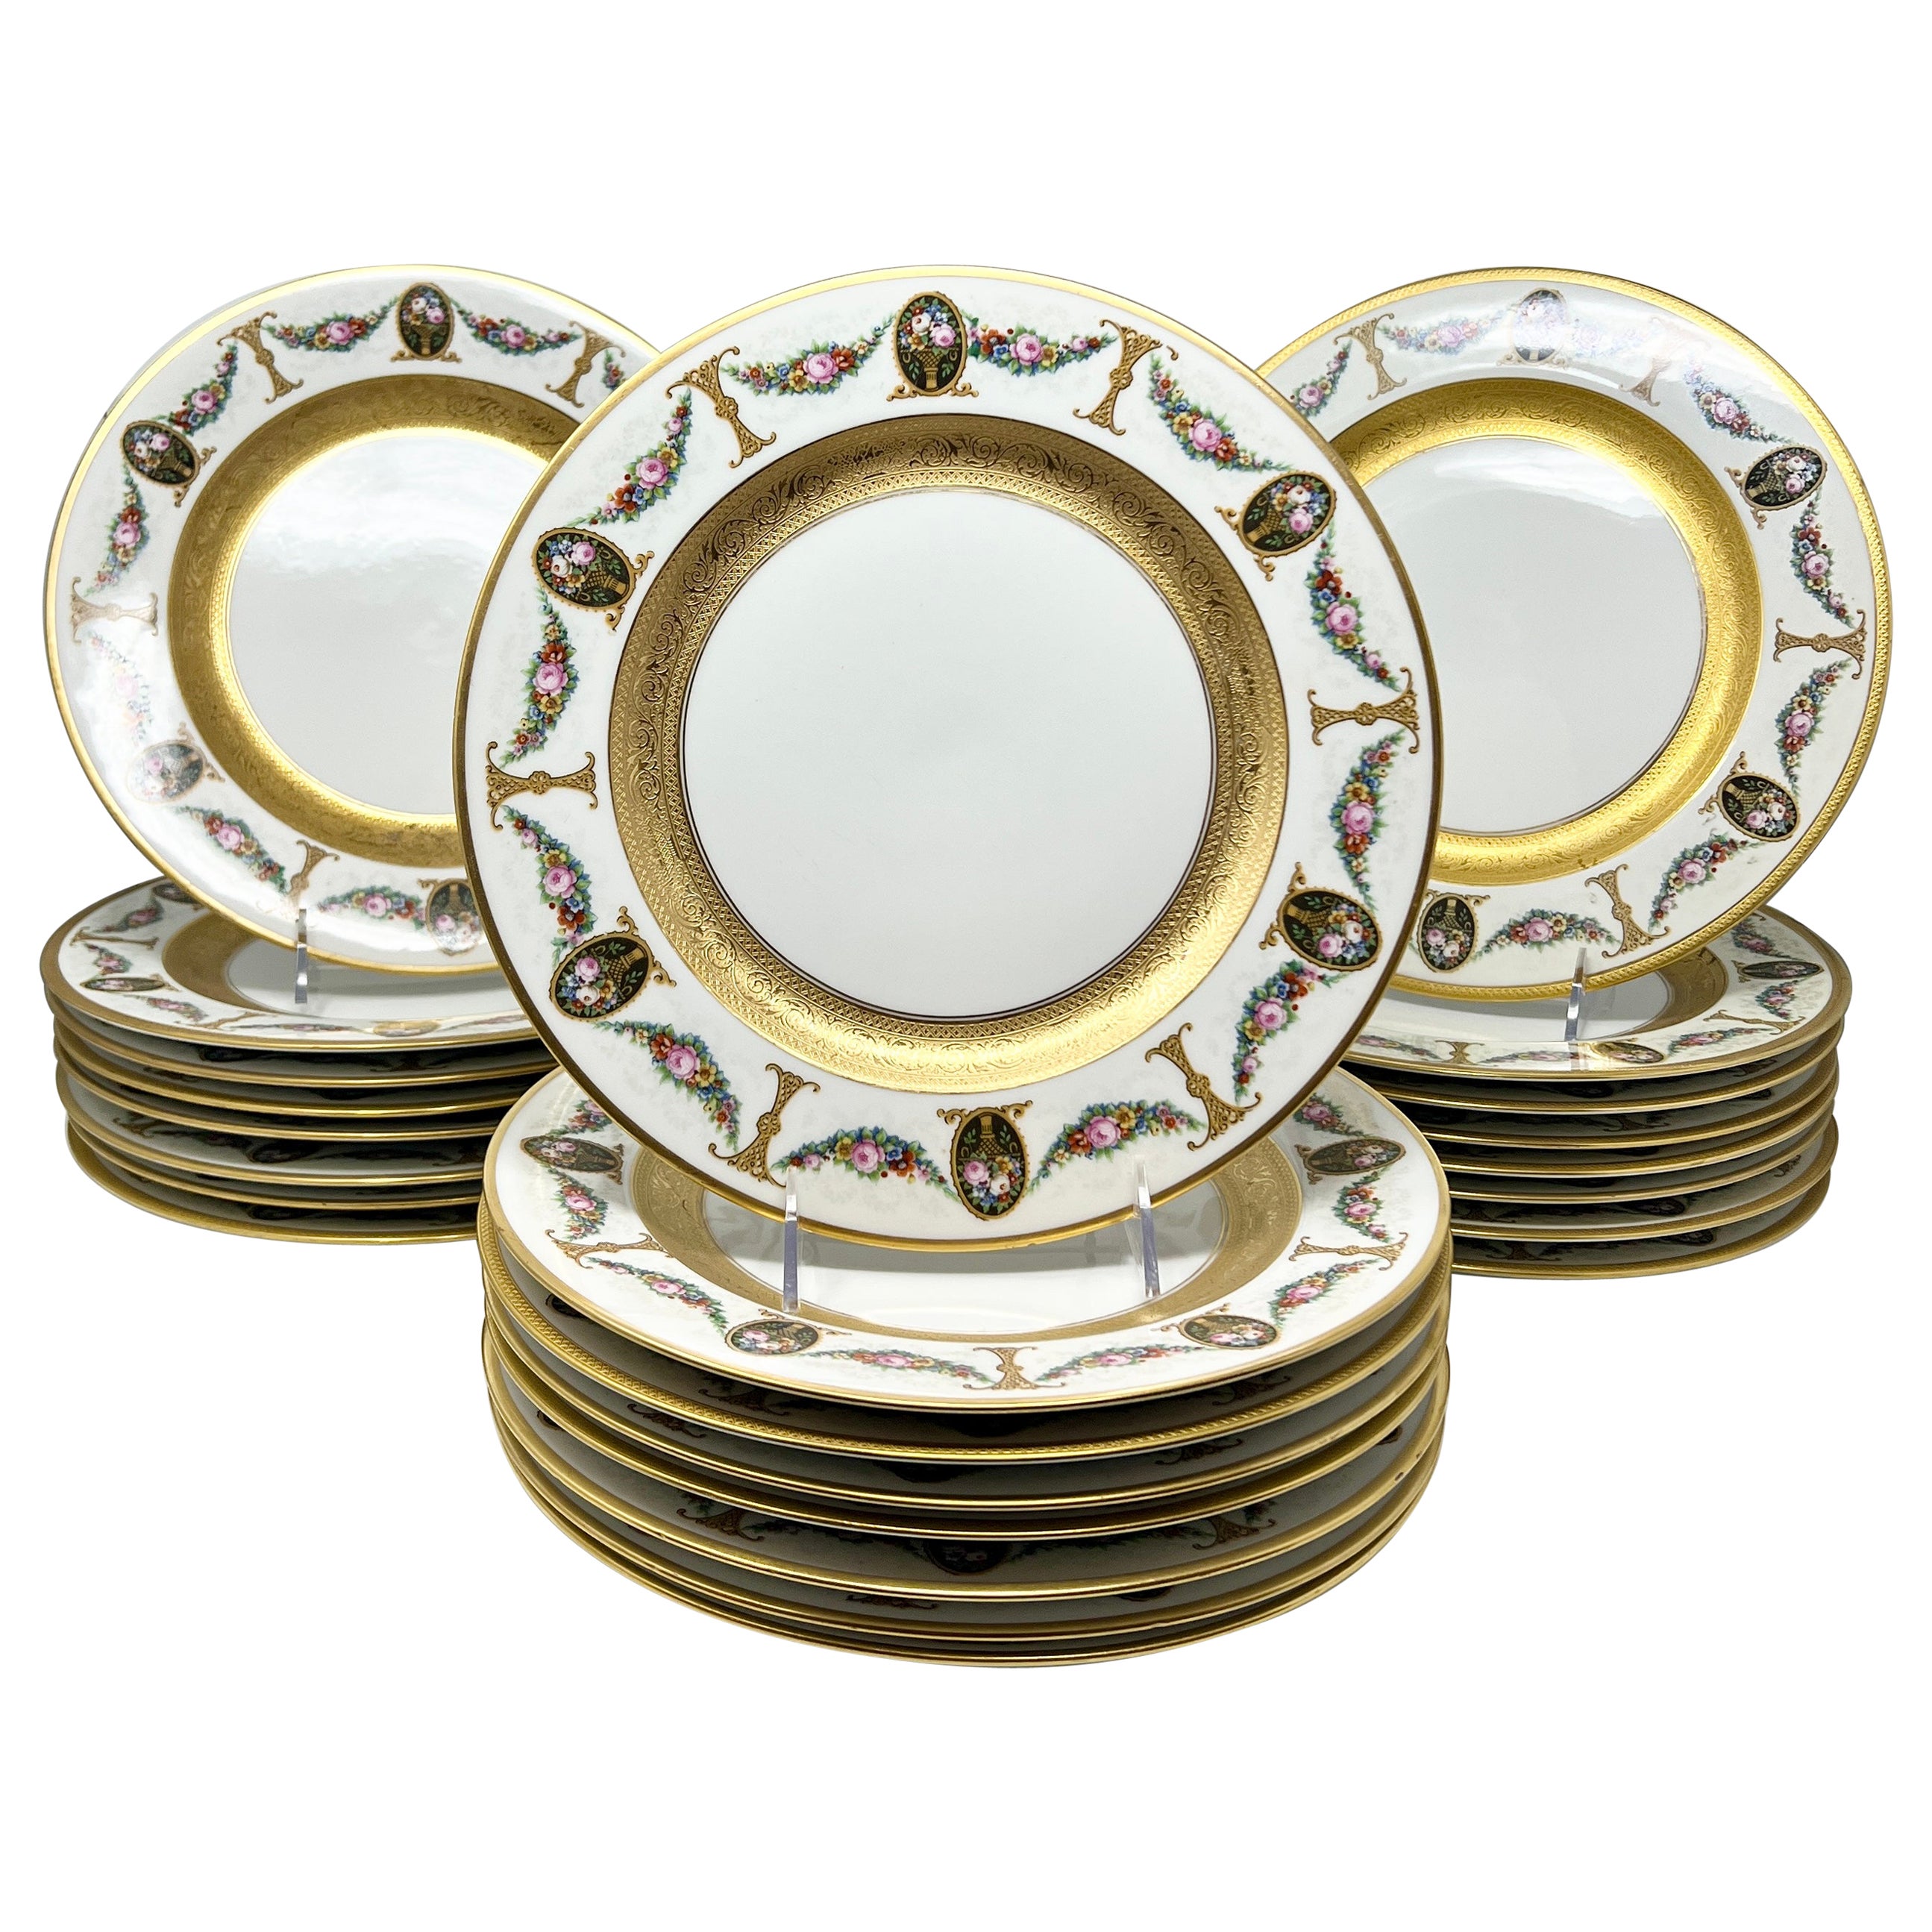 Ensemble de 24 assiettes plates anciennes bavaroises royales en porcelaine crème et or datant d'environ 1910